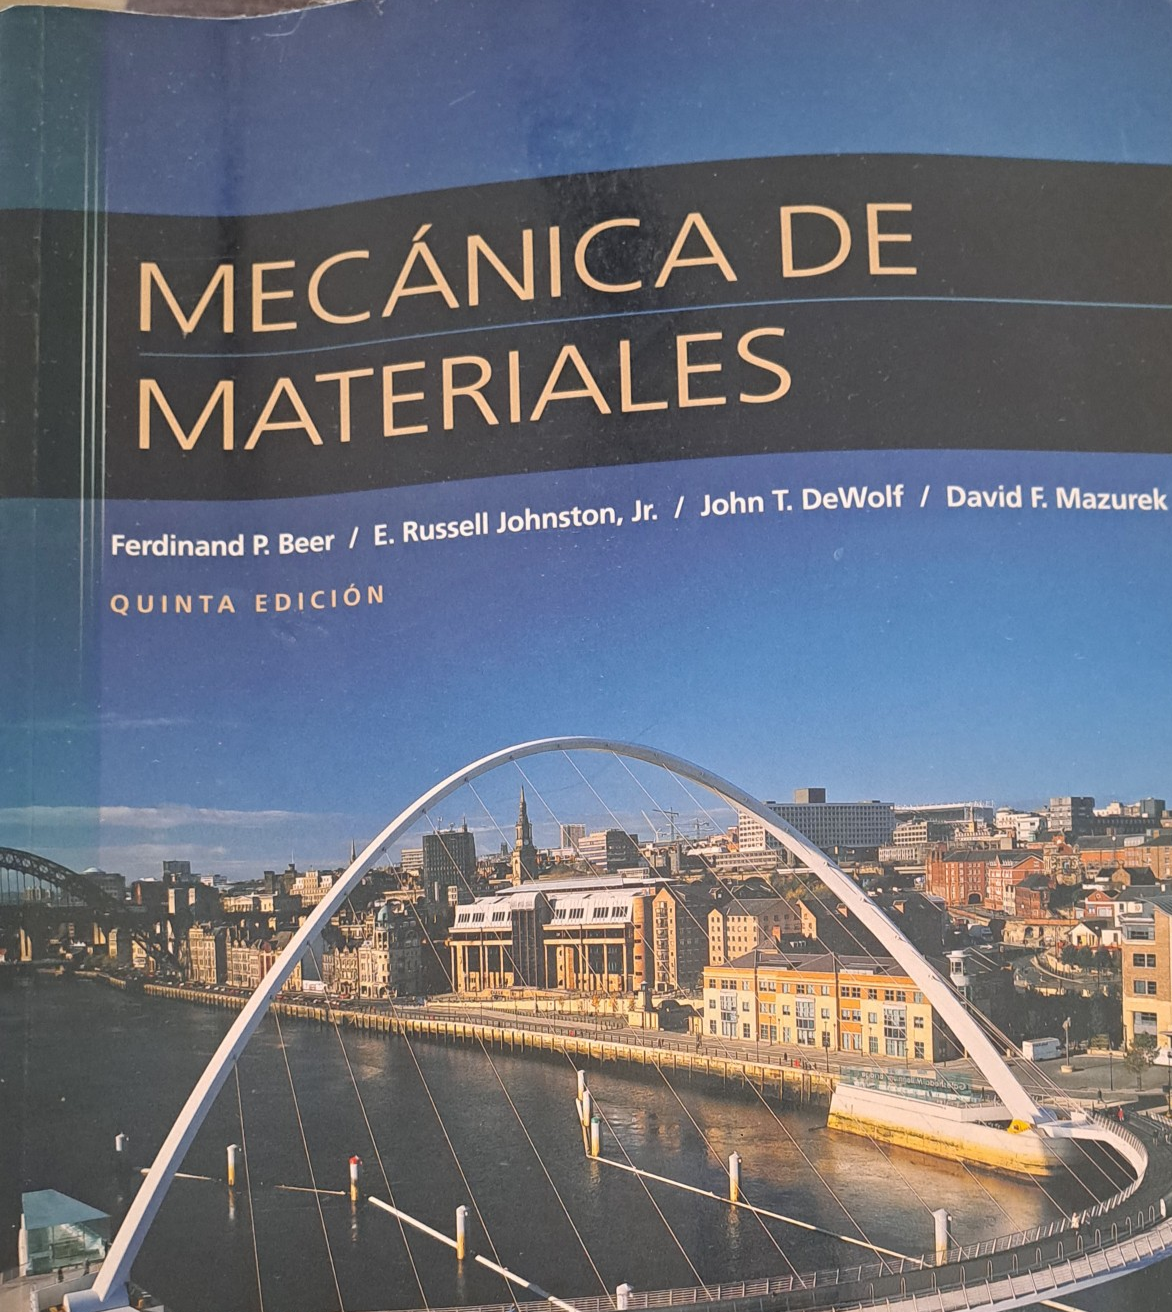 libros y revistas - Libros para estudiantes universitarios de Ingenieria Mecatronica.  3